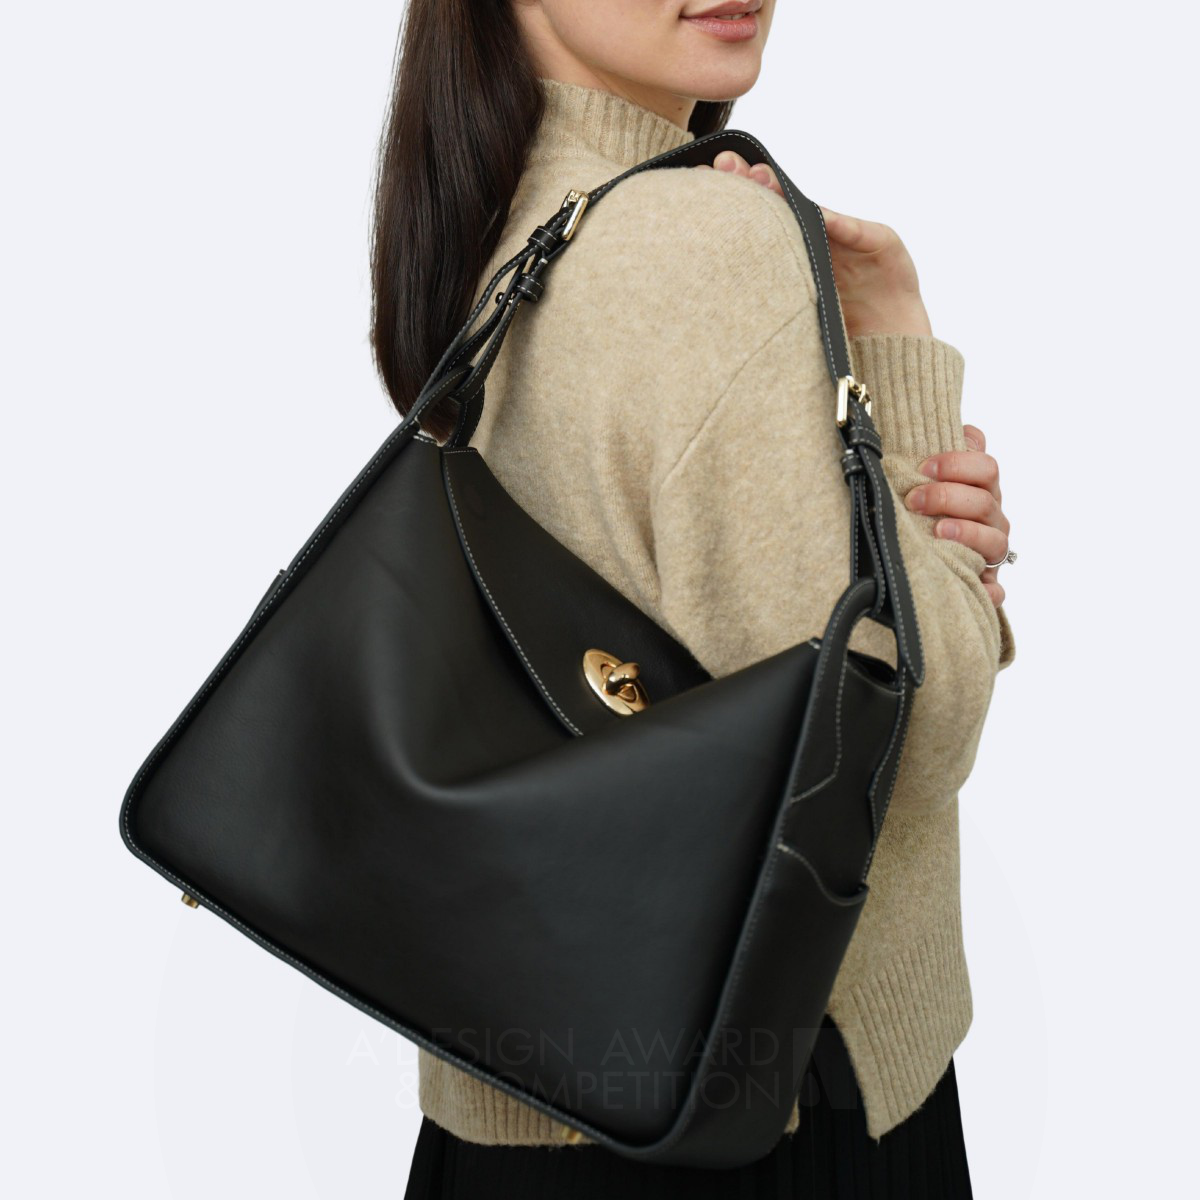 विट बैग: एक बहुमुखी डिजाइन जो शैली, कार्यक्षमता, और स्थायित्व को मिलाता है